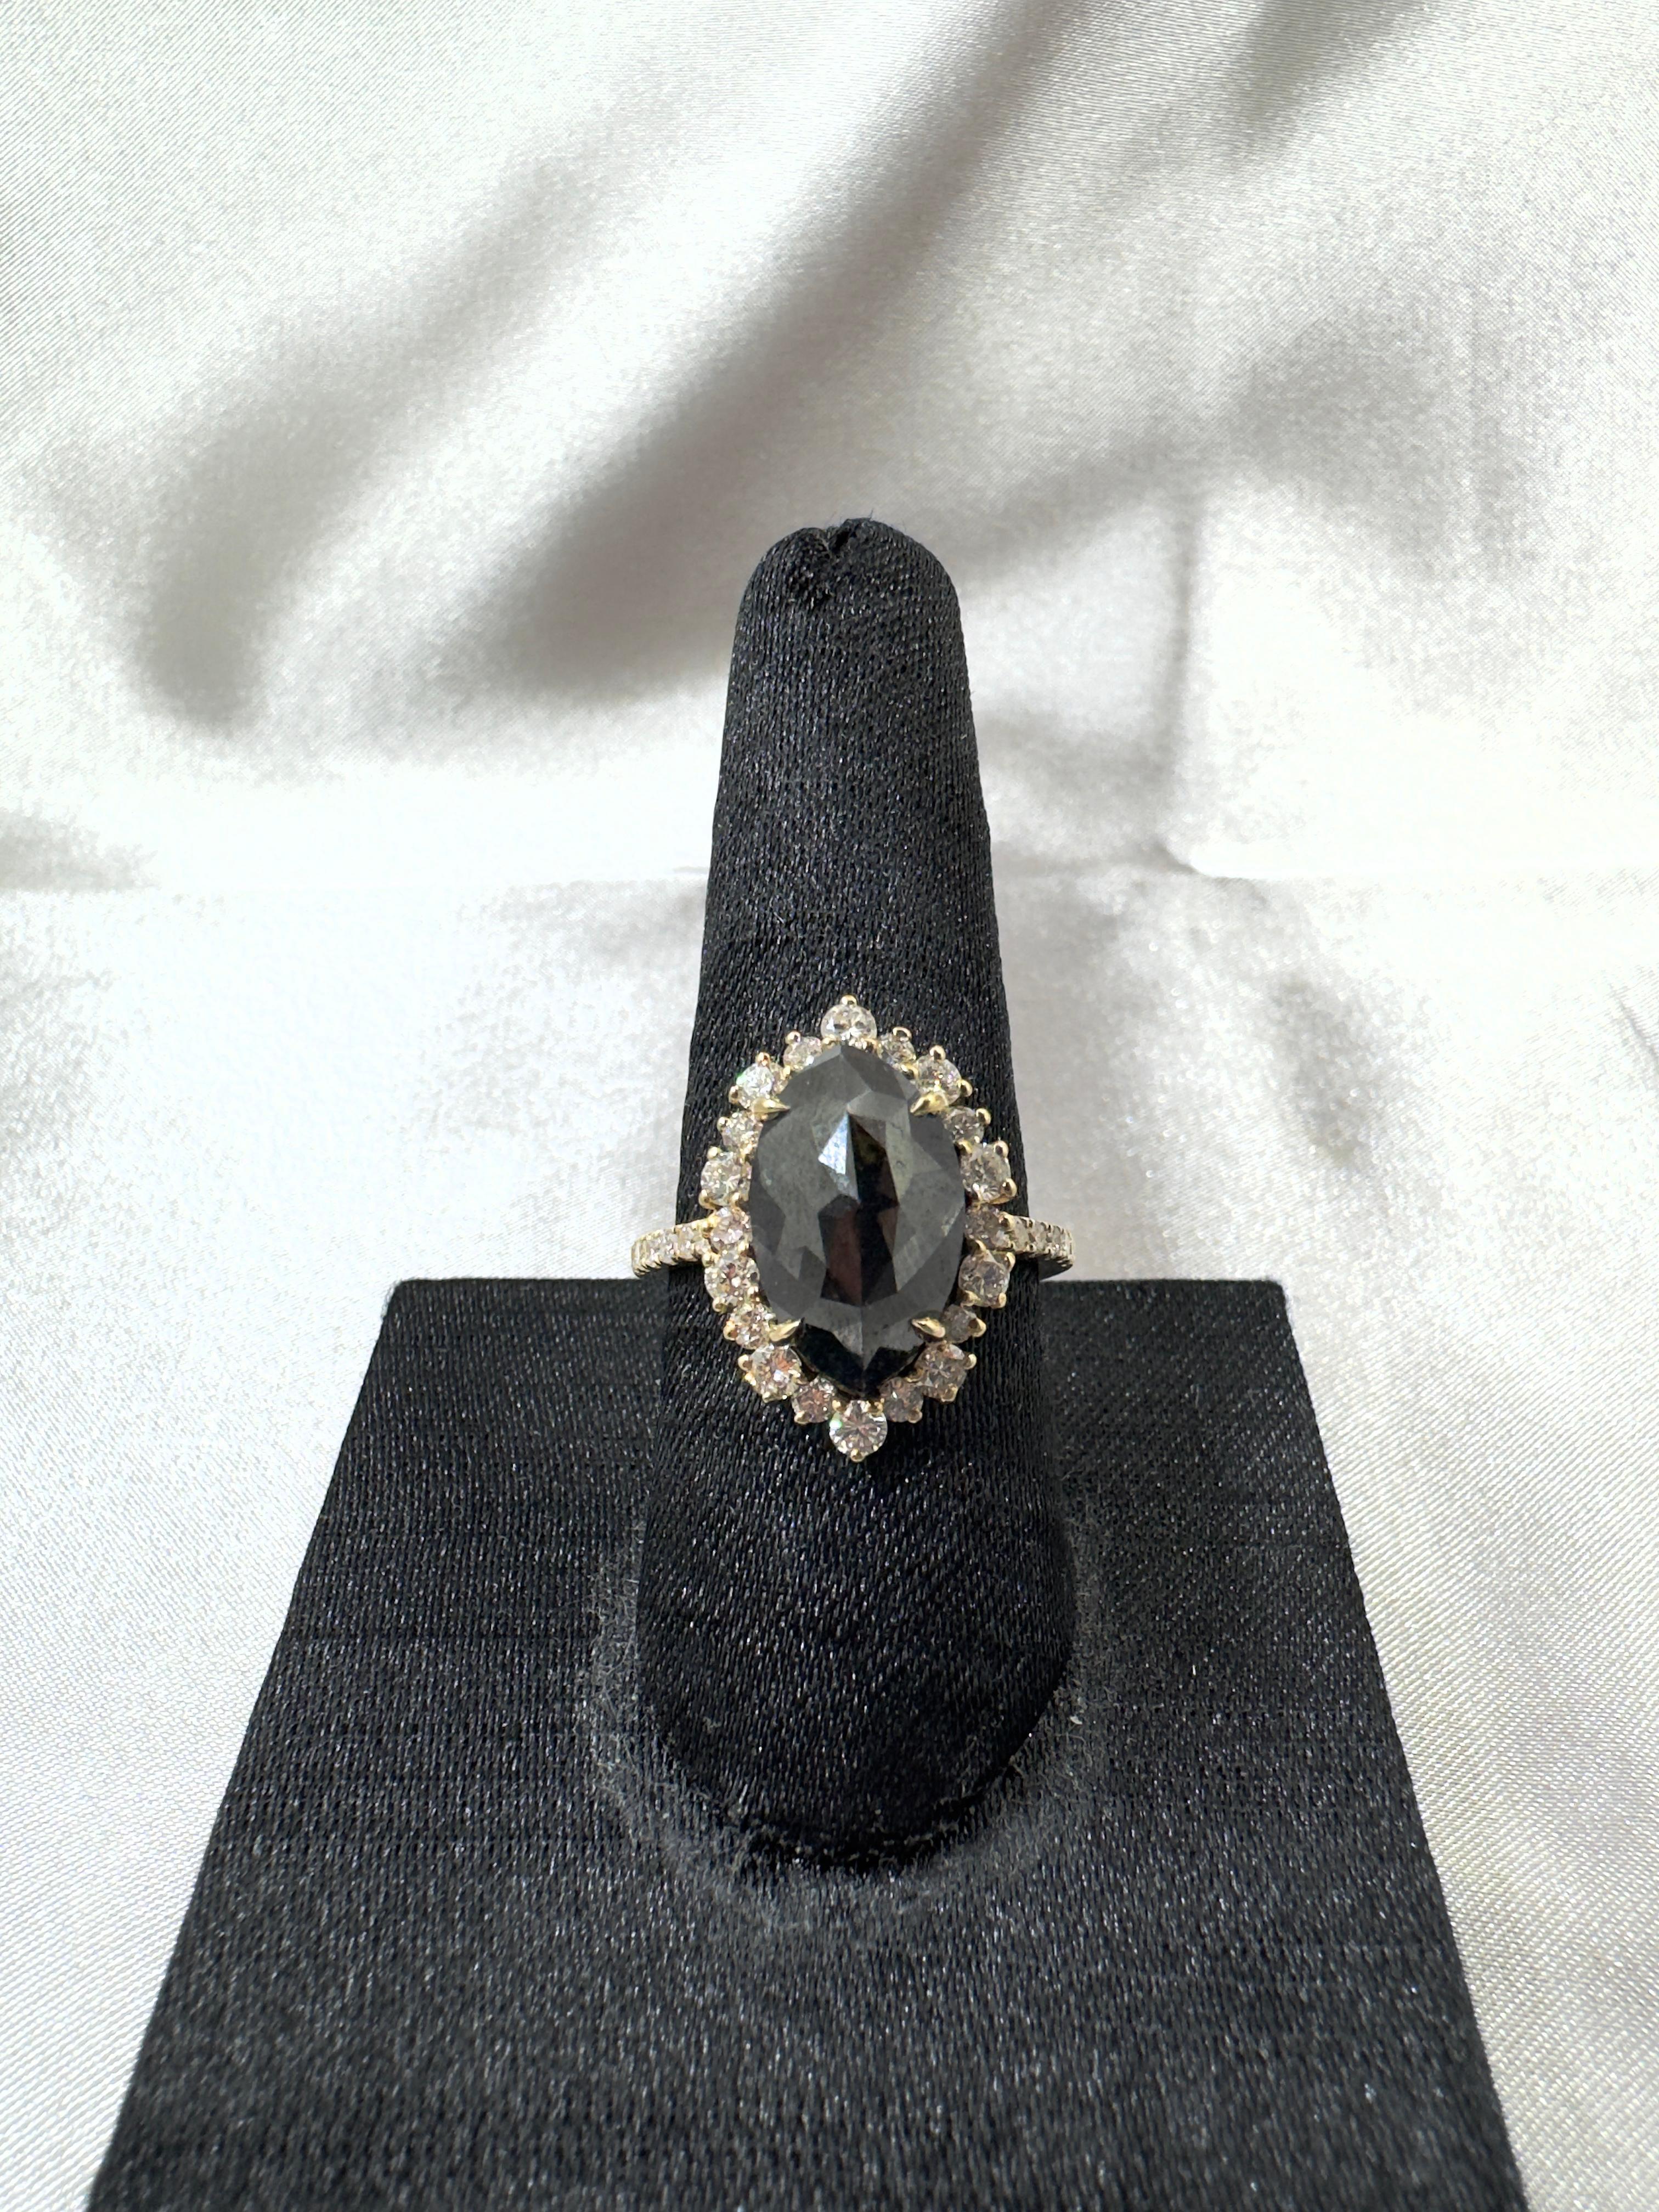 IGI CERTIFIED Vintage 5.70 Carat Black Diamond Ring in 14 Karat Yellow Gold For Sale 2